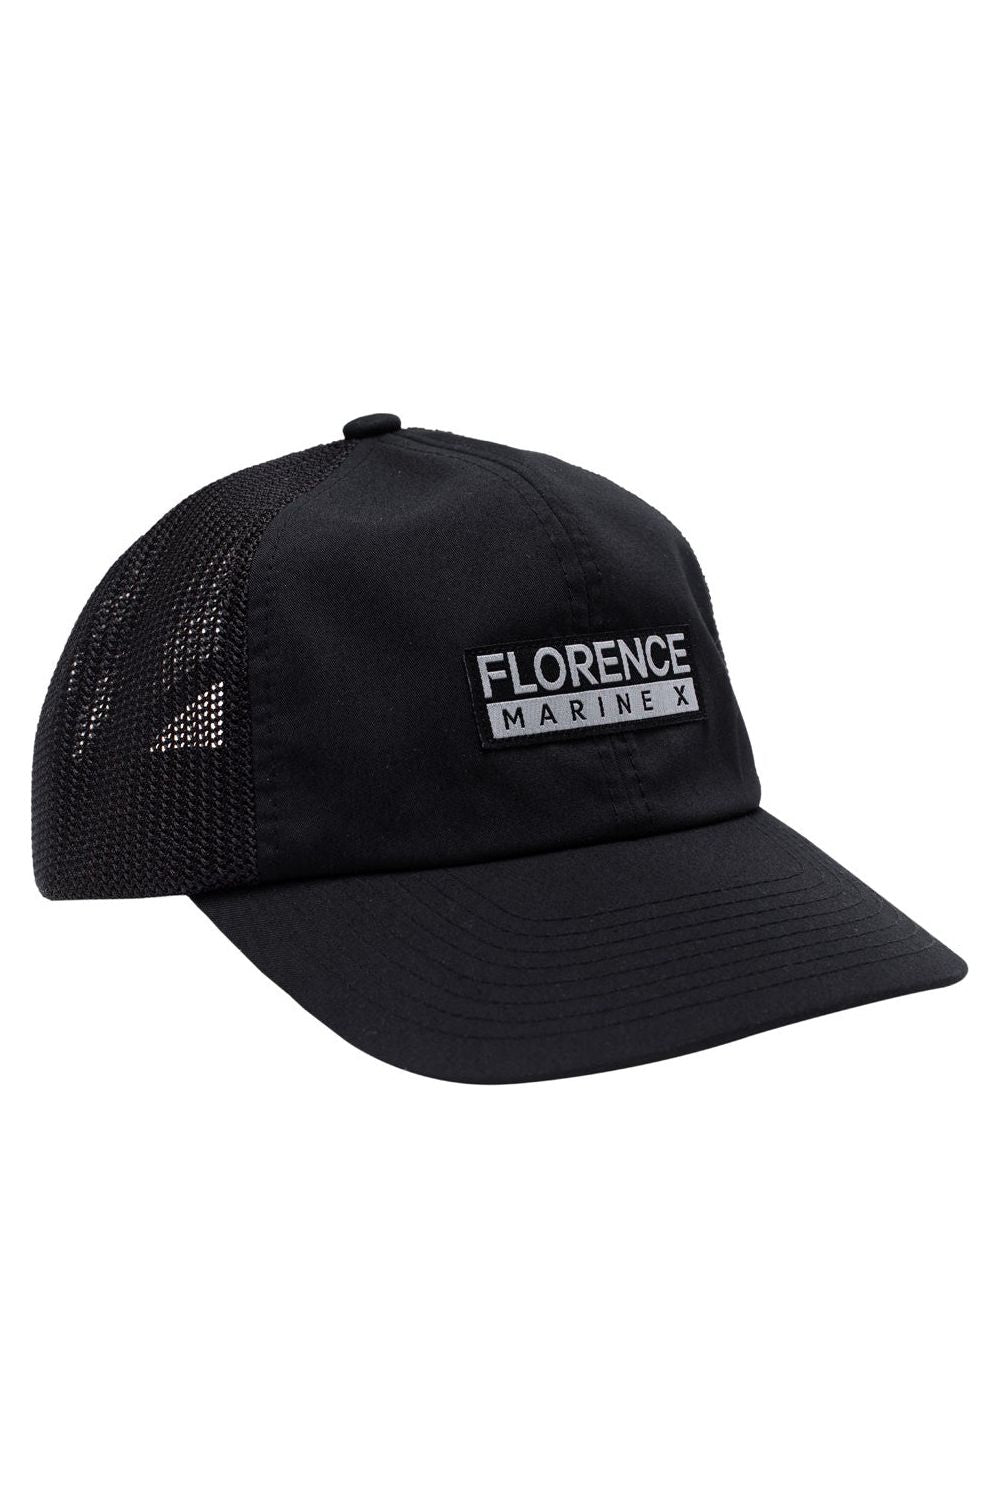 Florence Marine X Unstructured Trucker Hat Black